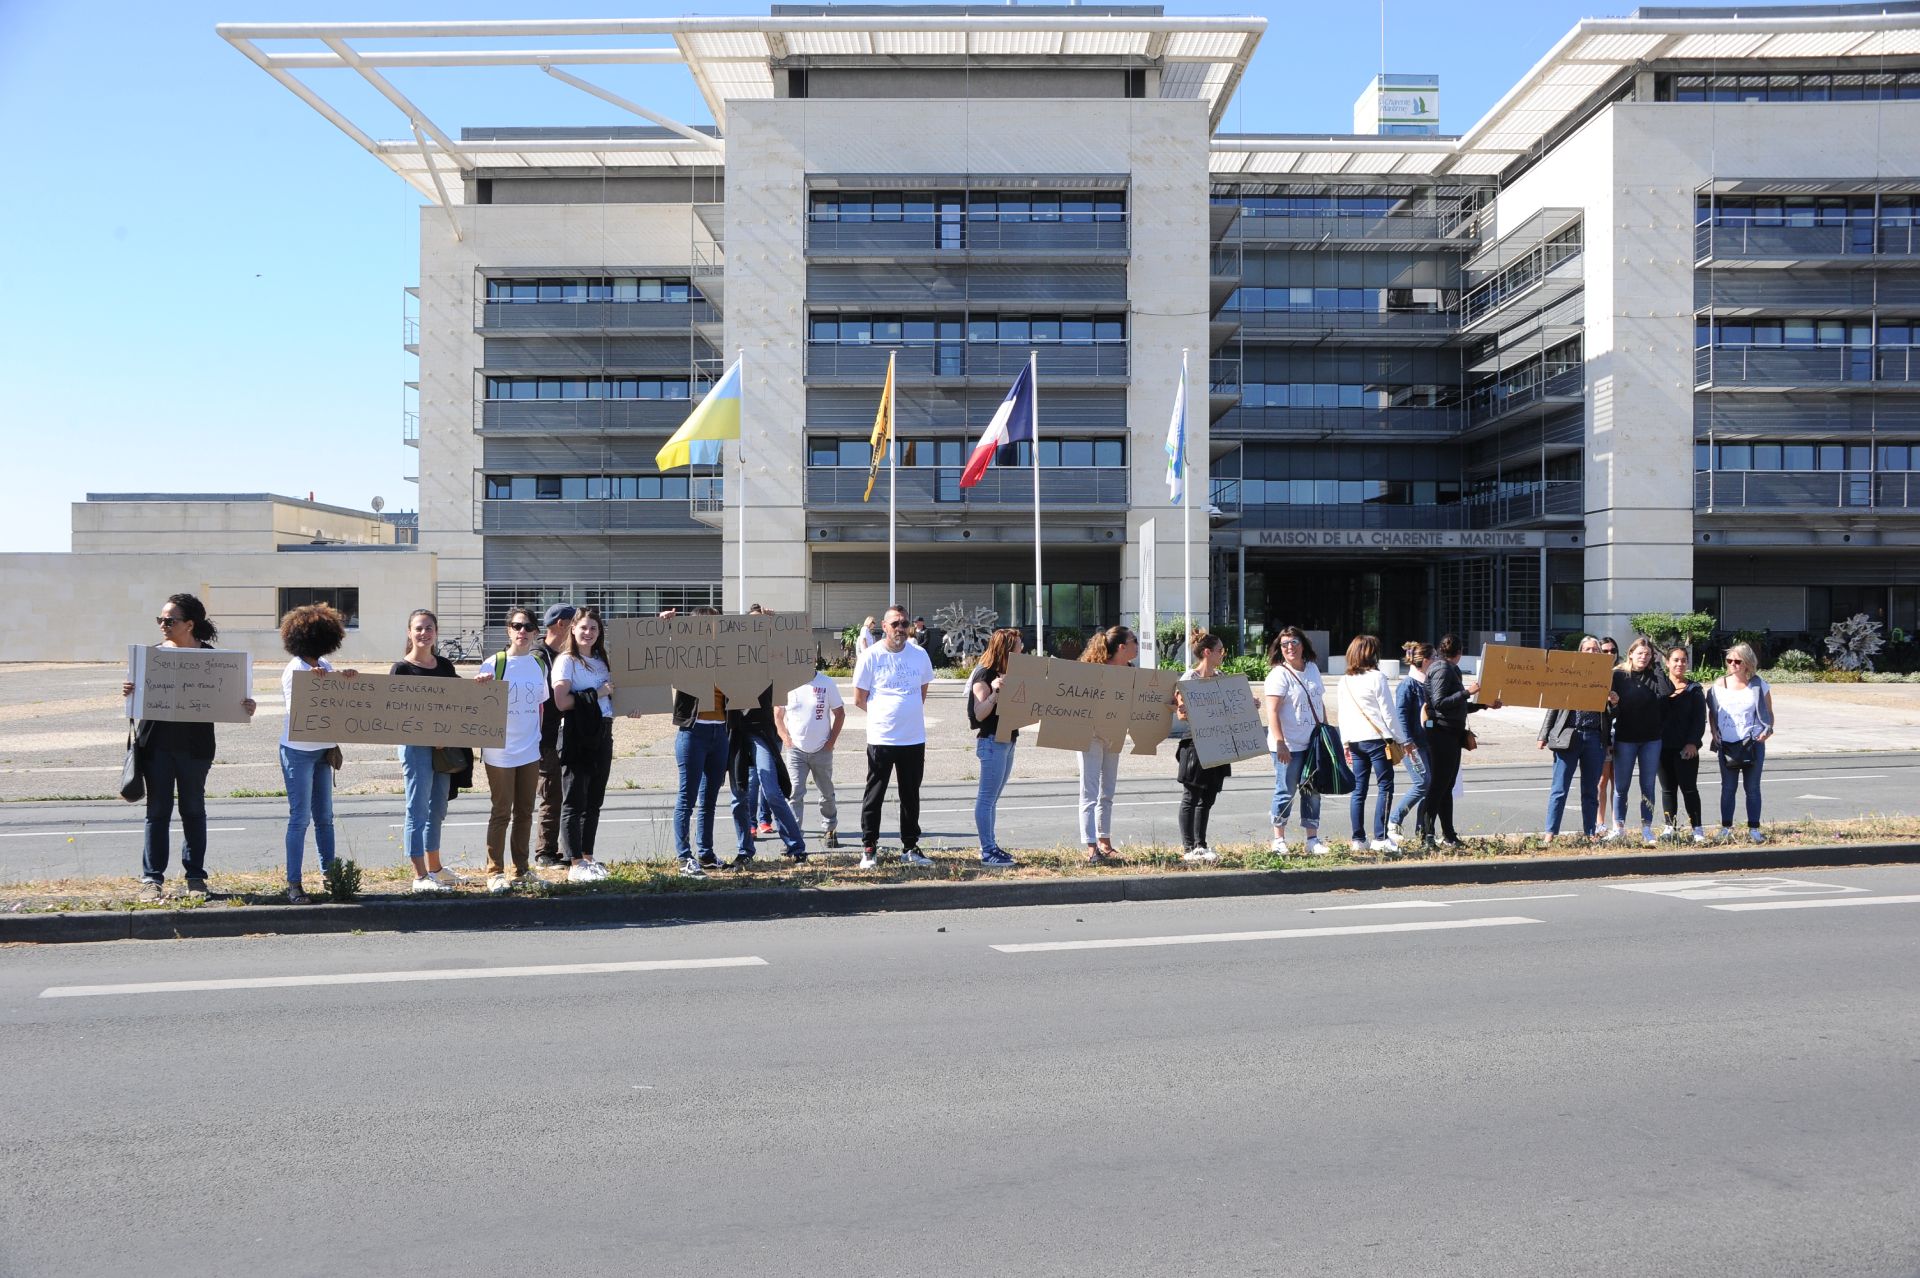 Manifestation du personnel médico social devant la maison de la Charente-Maritime (Yannick Picard)